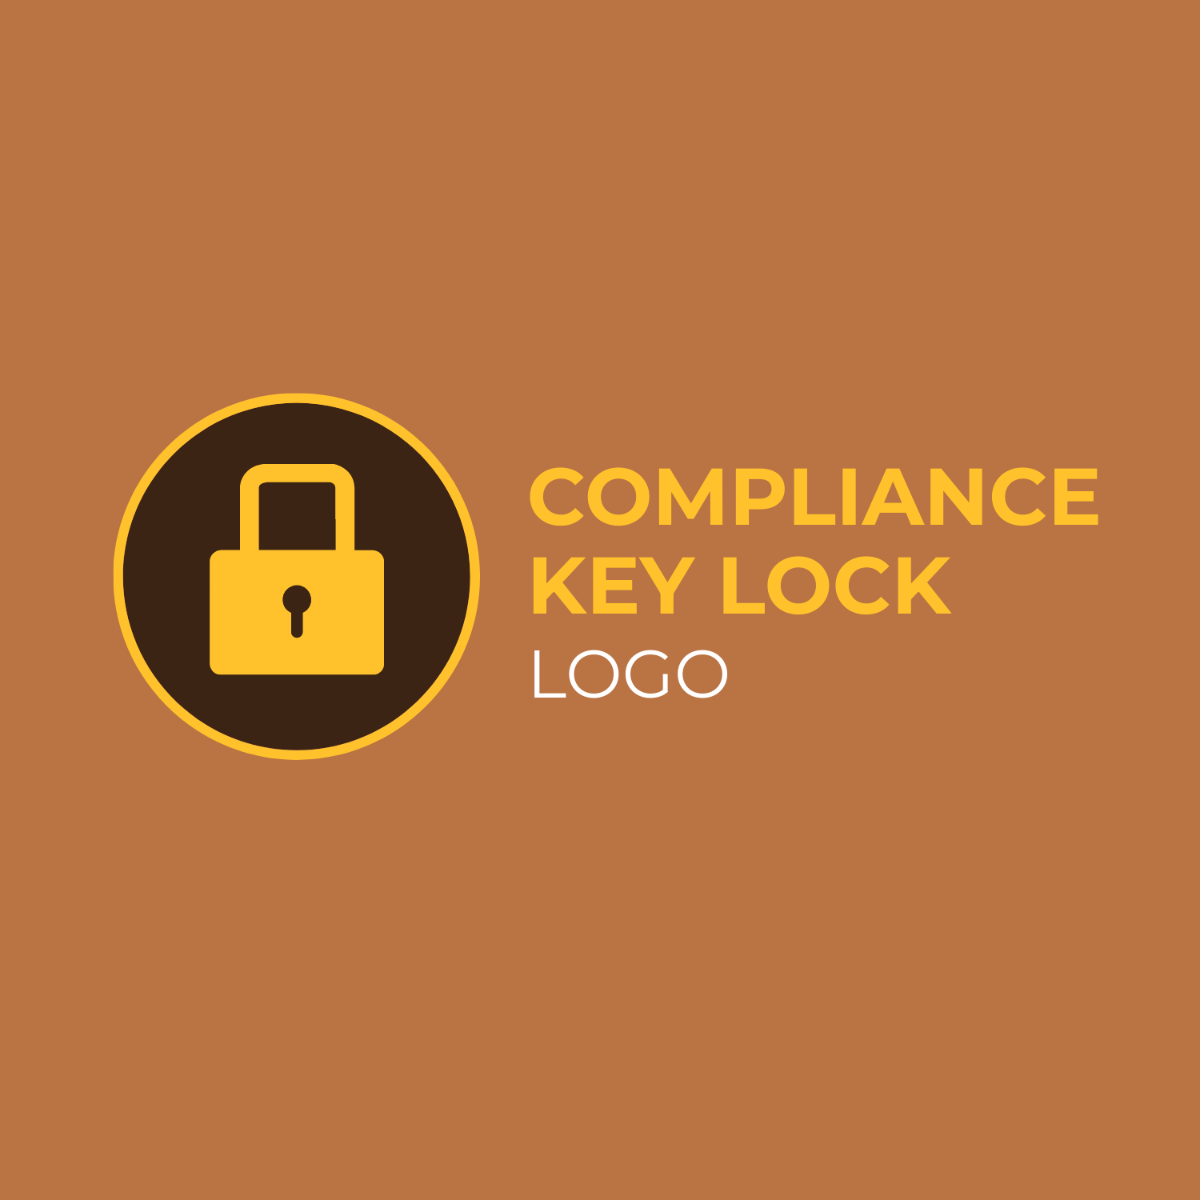 Compliance Key Lock Logo Template